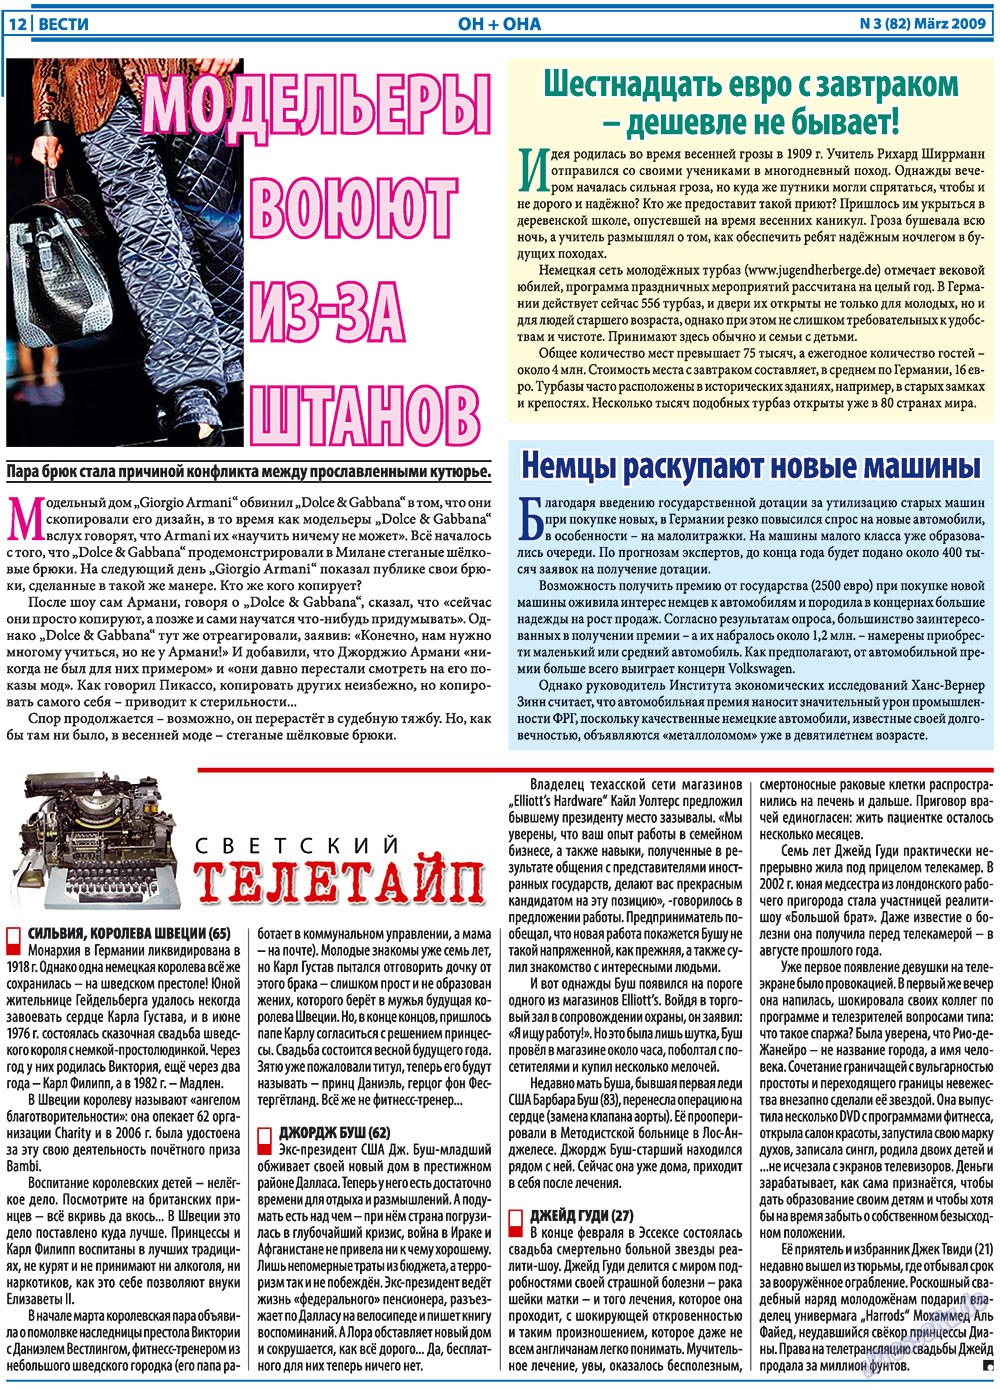 Вести, газета. 2009 №3 стр.12